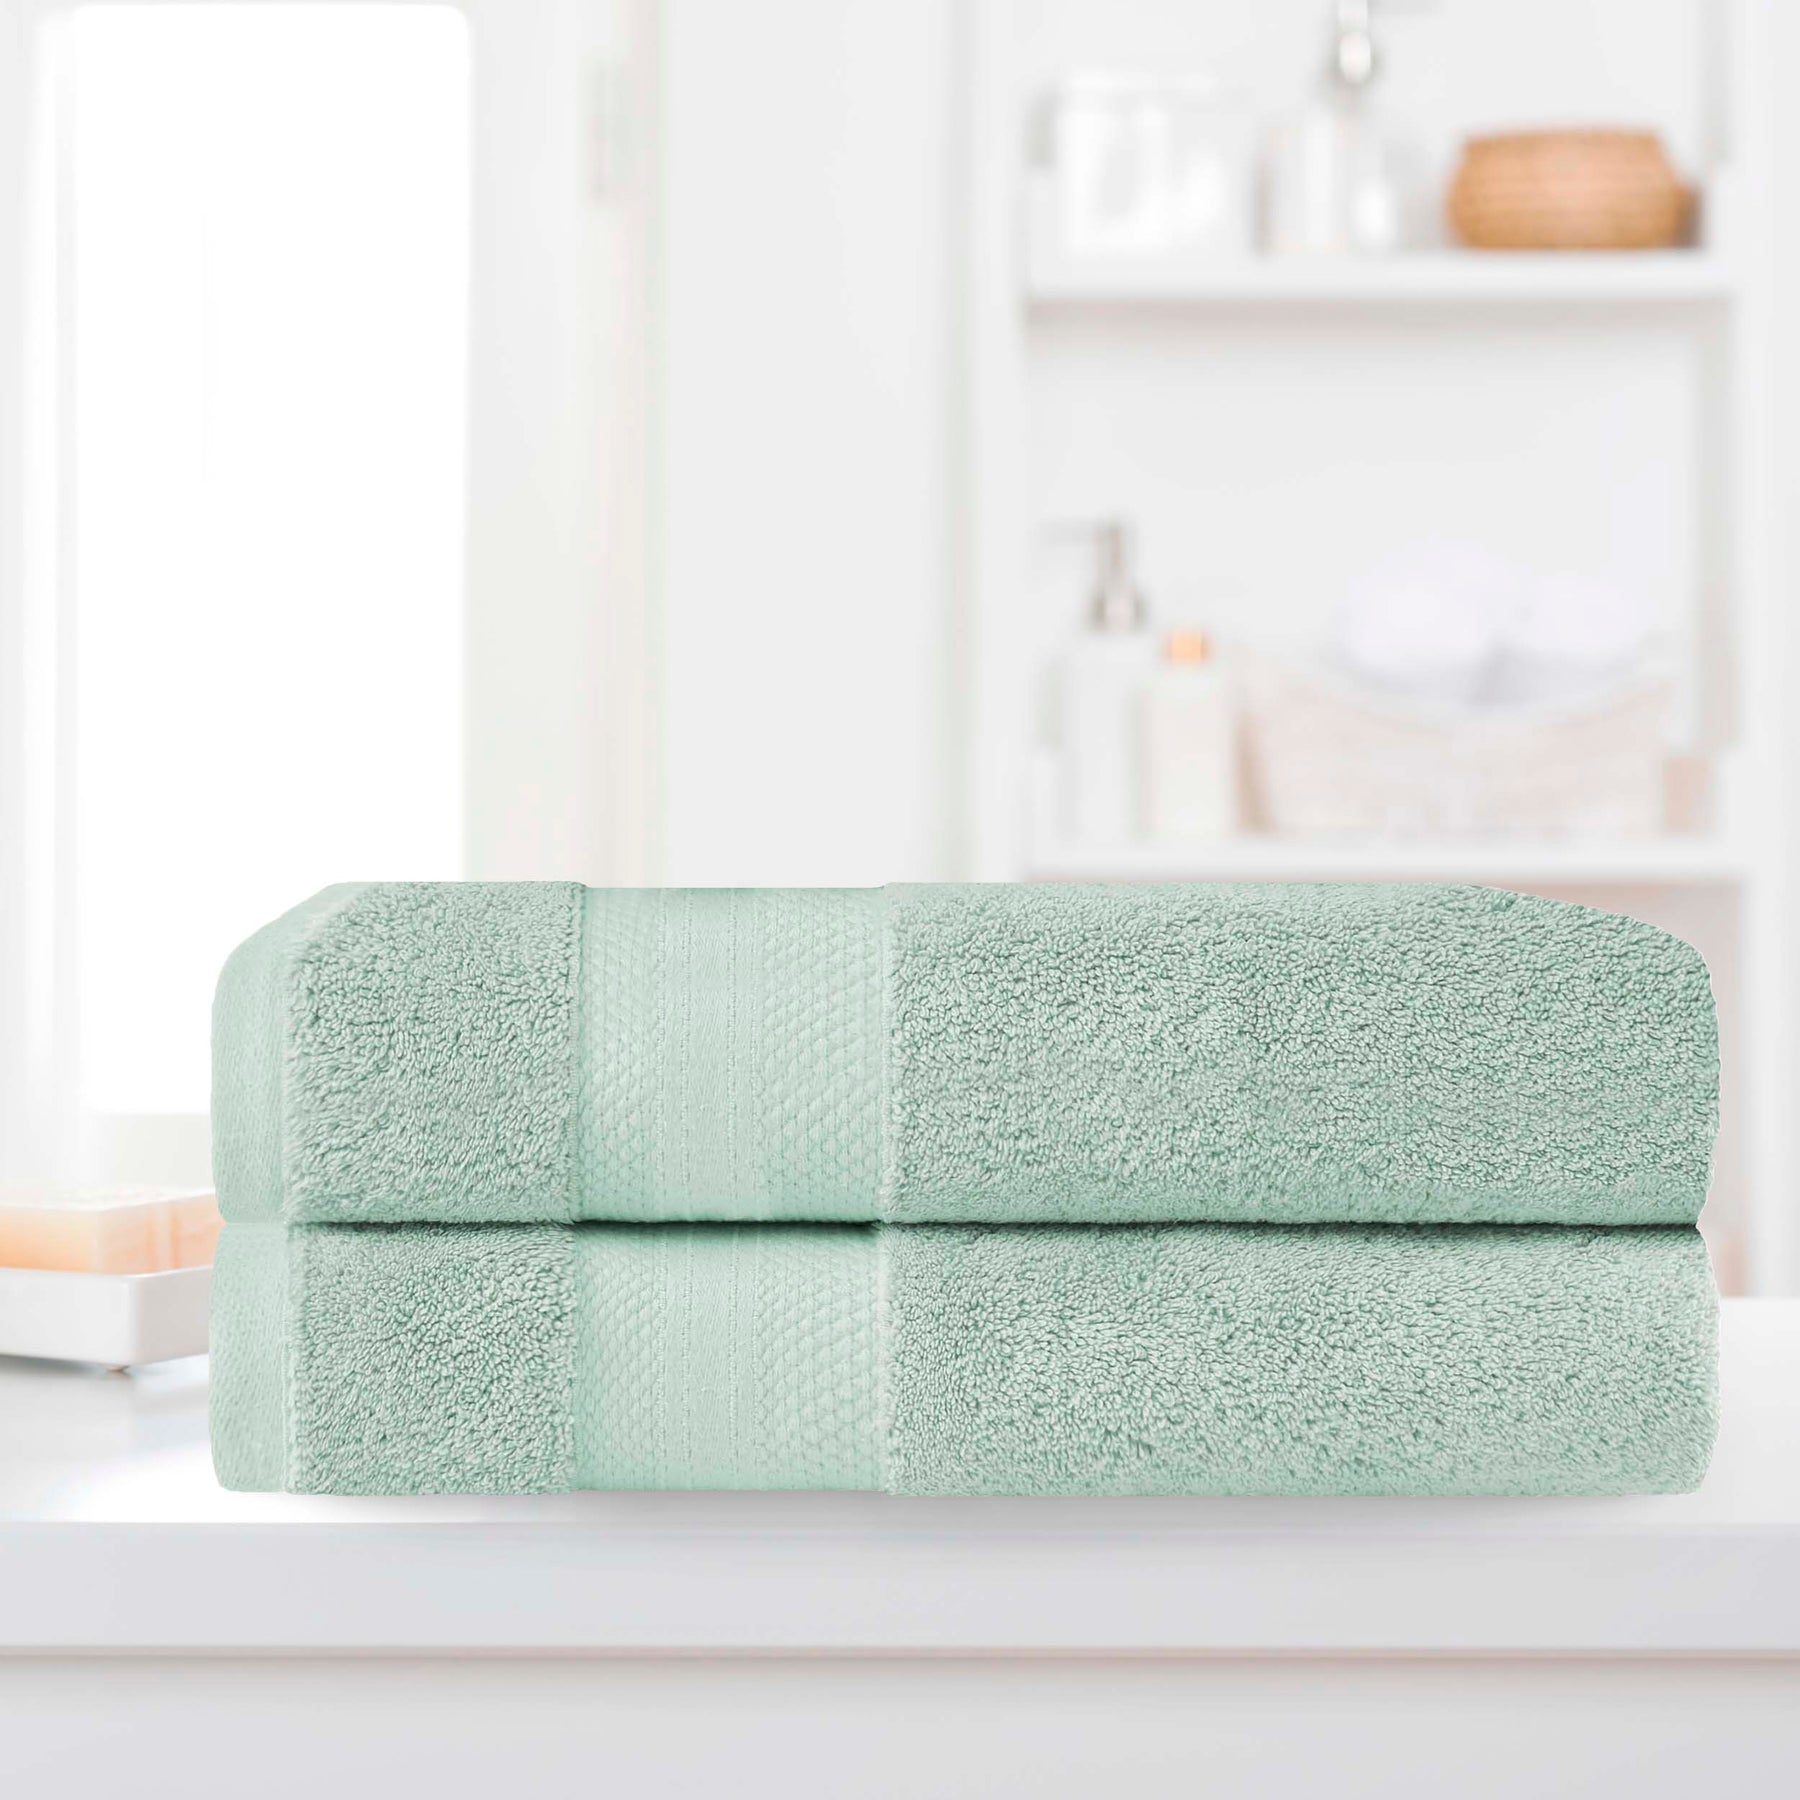 Superior Premium Turkish-Cotton Assorted Towel Set - Dusty Aqua